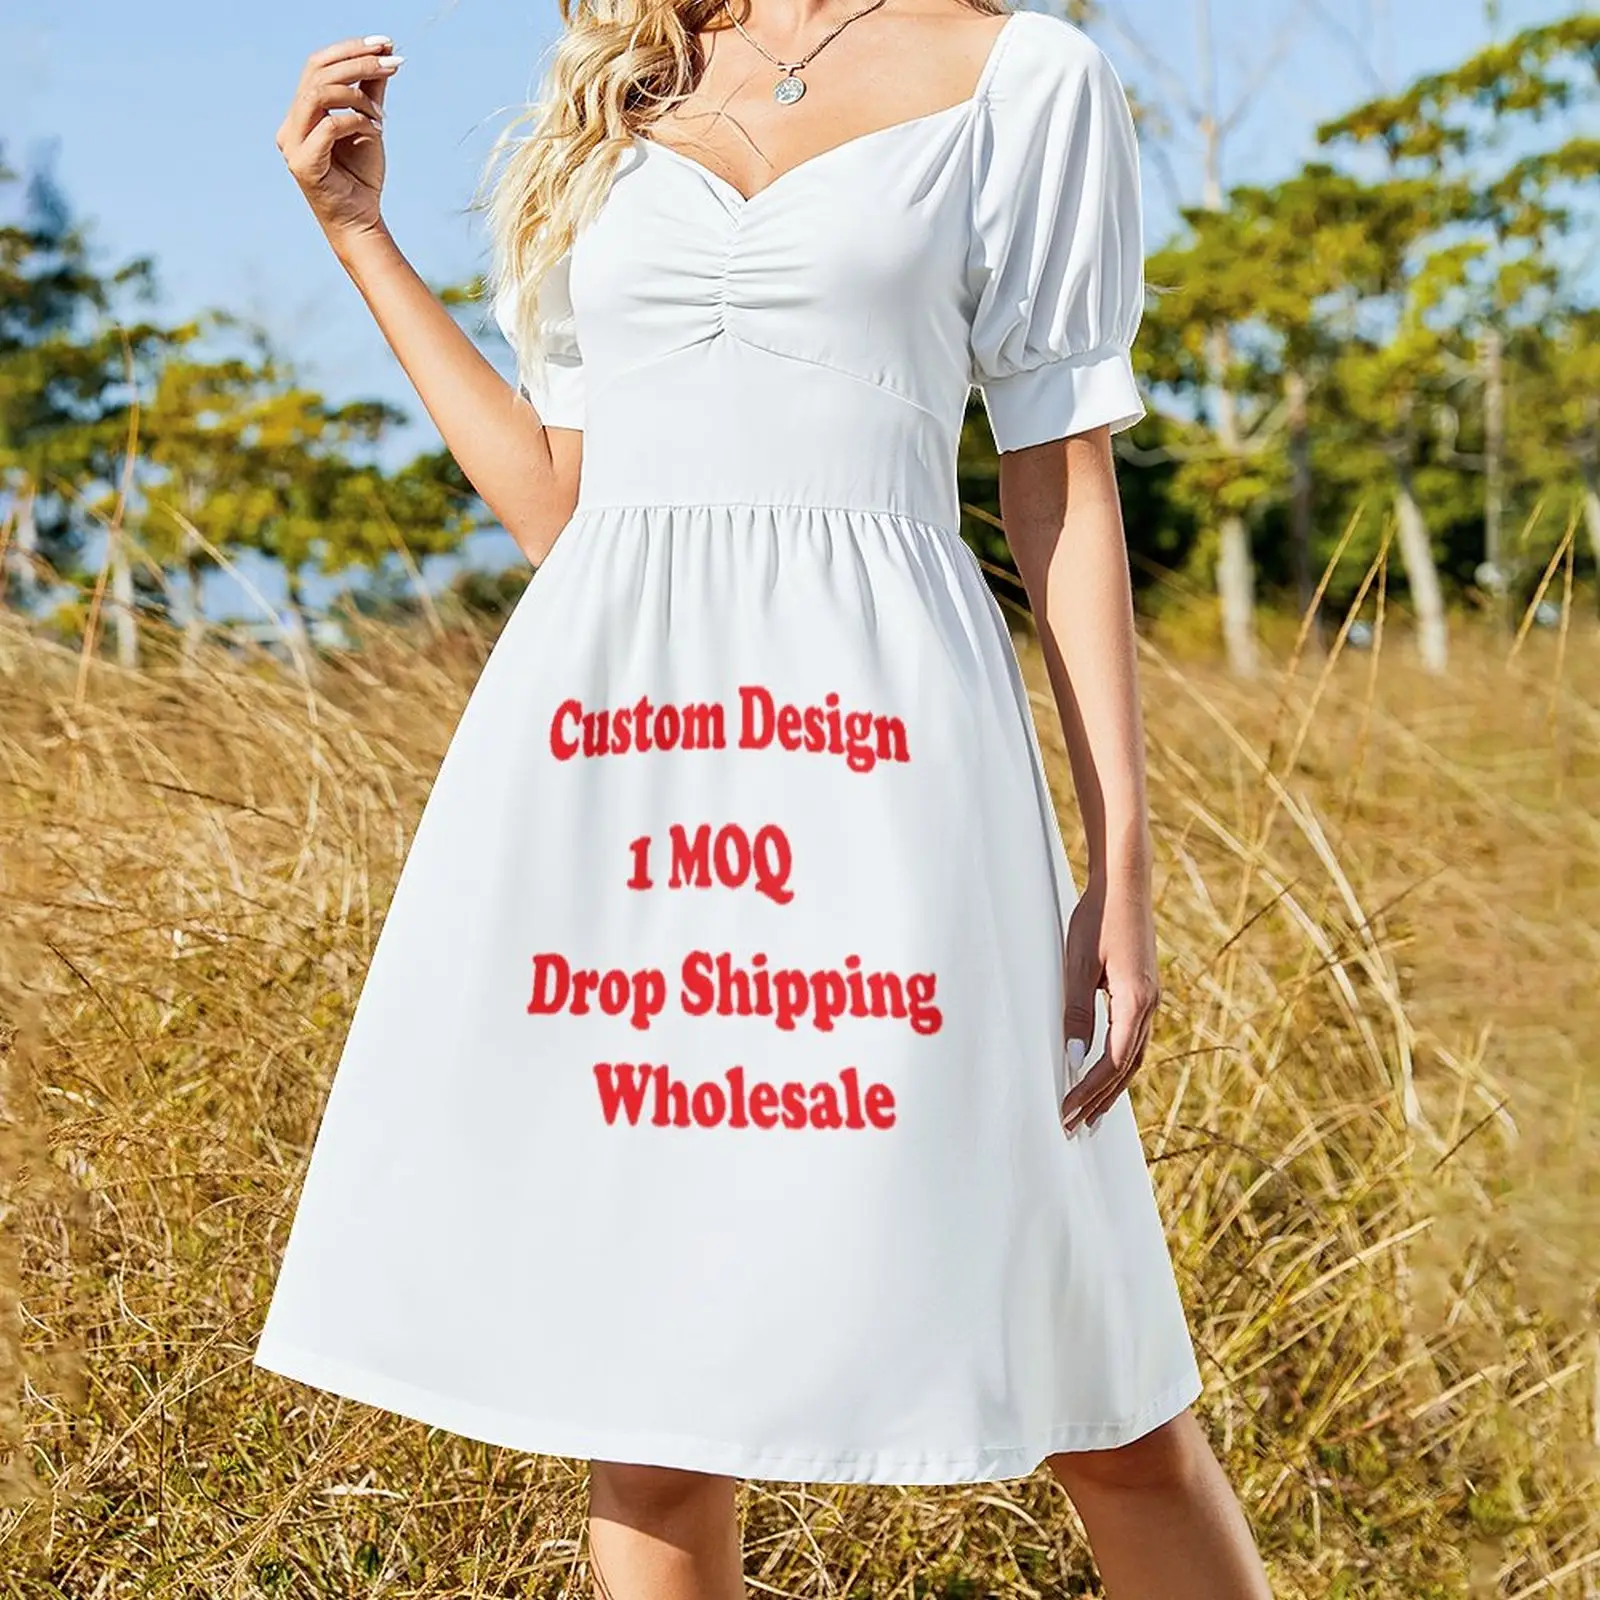 Gaun wanita ukuran Plus bercetak sesuai permintaan kustom desain manis musim panas anak perempuan lengan pendek empuk gaun kasual untuk piknik